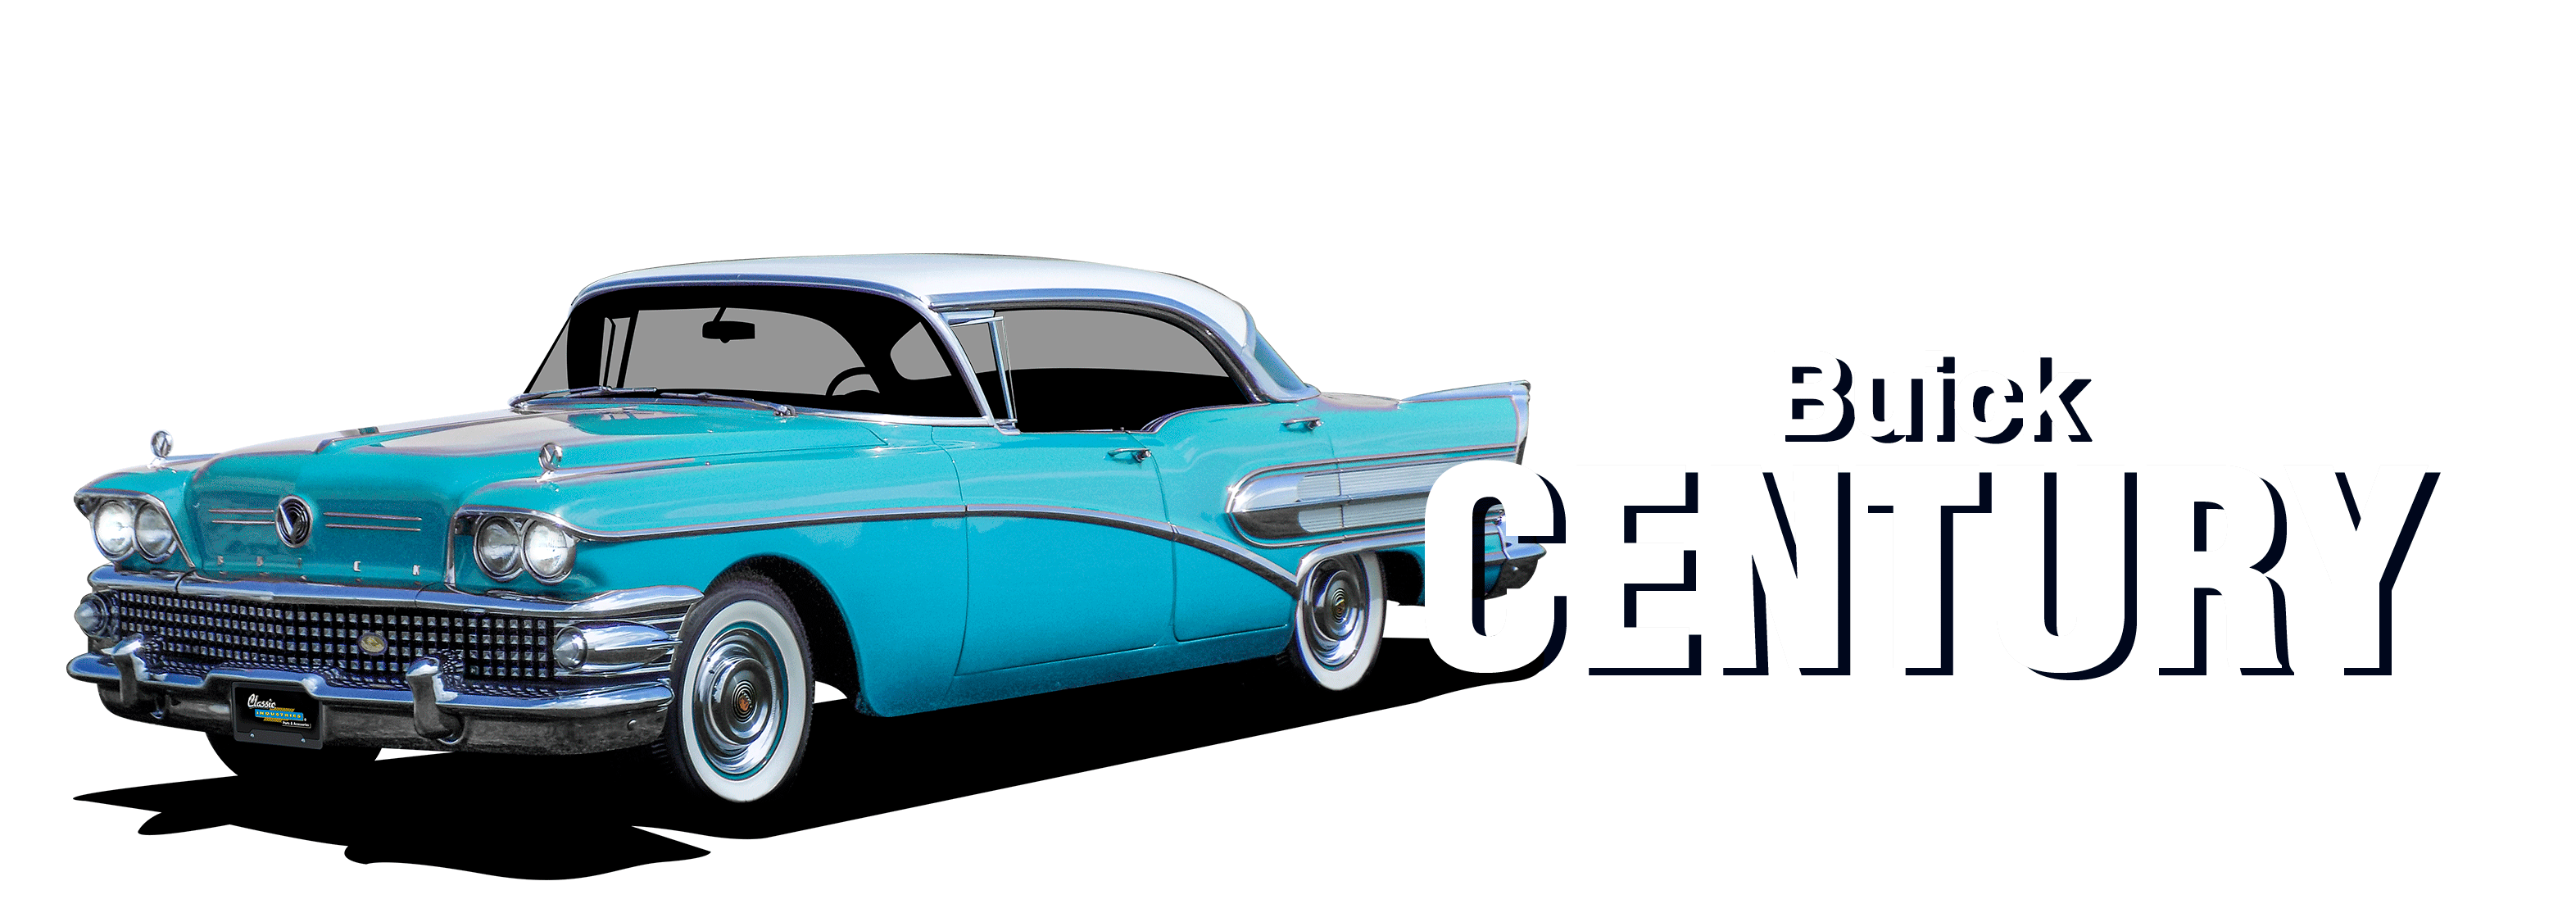 Buick-Century-vehicle-desktop